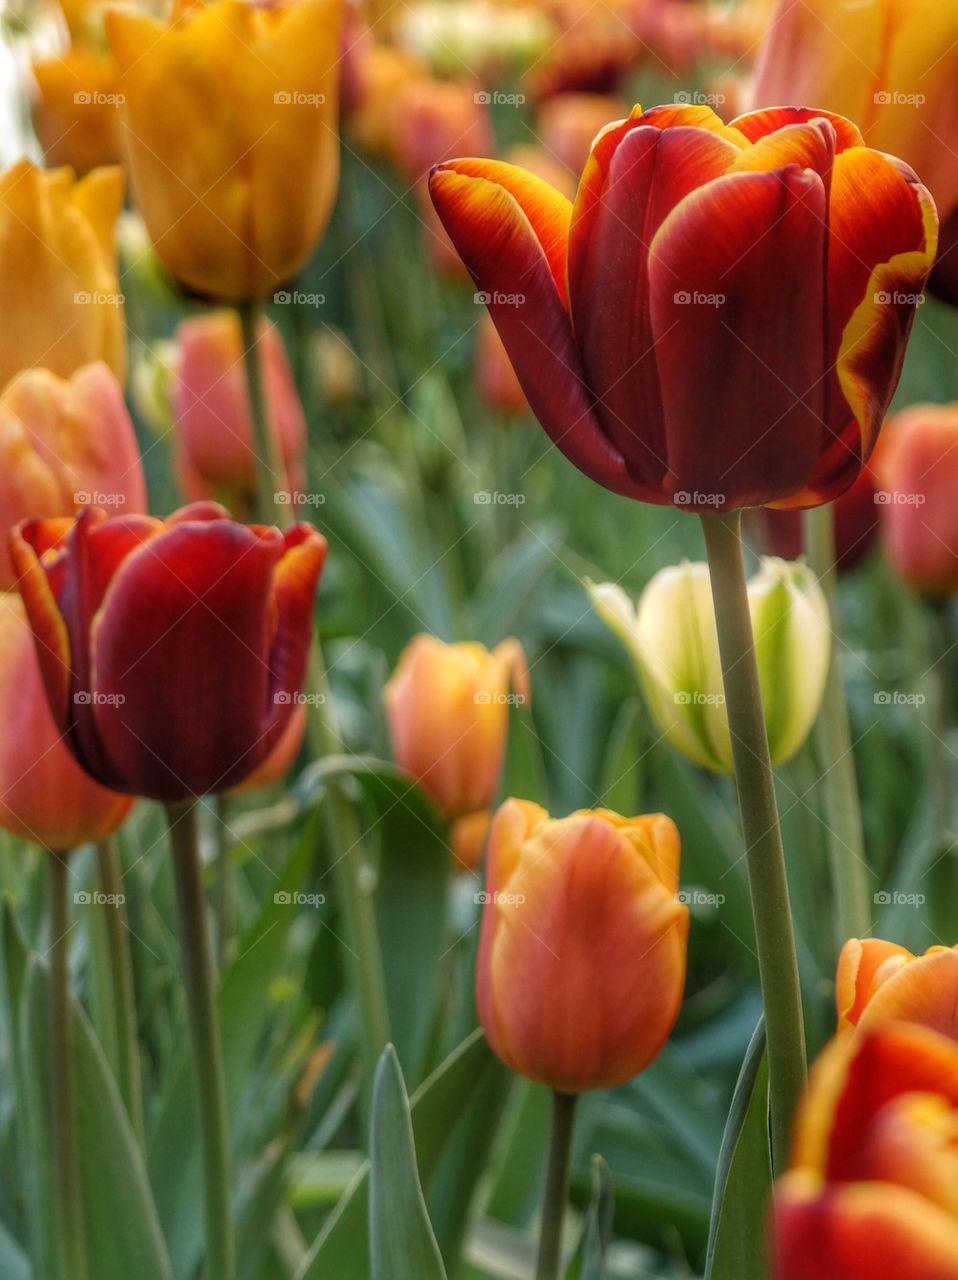 Tulip flowers blooming in spring